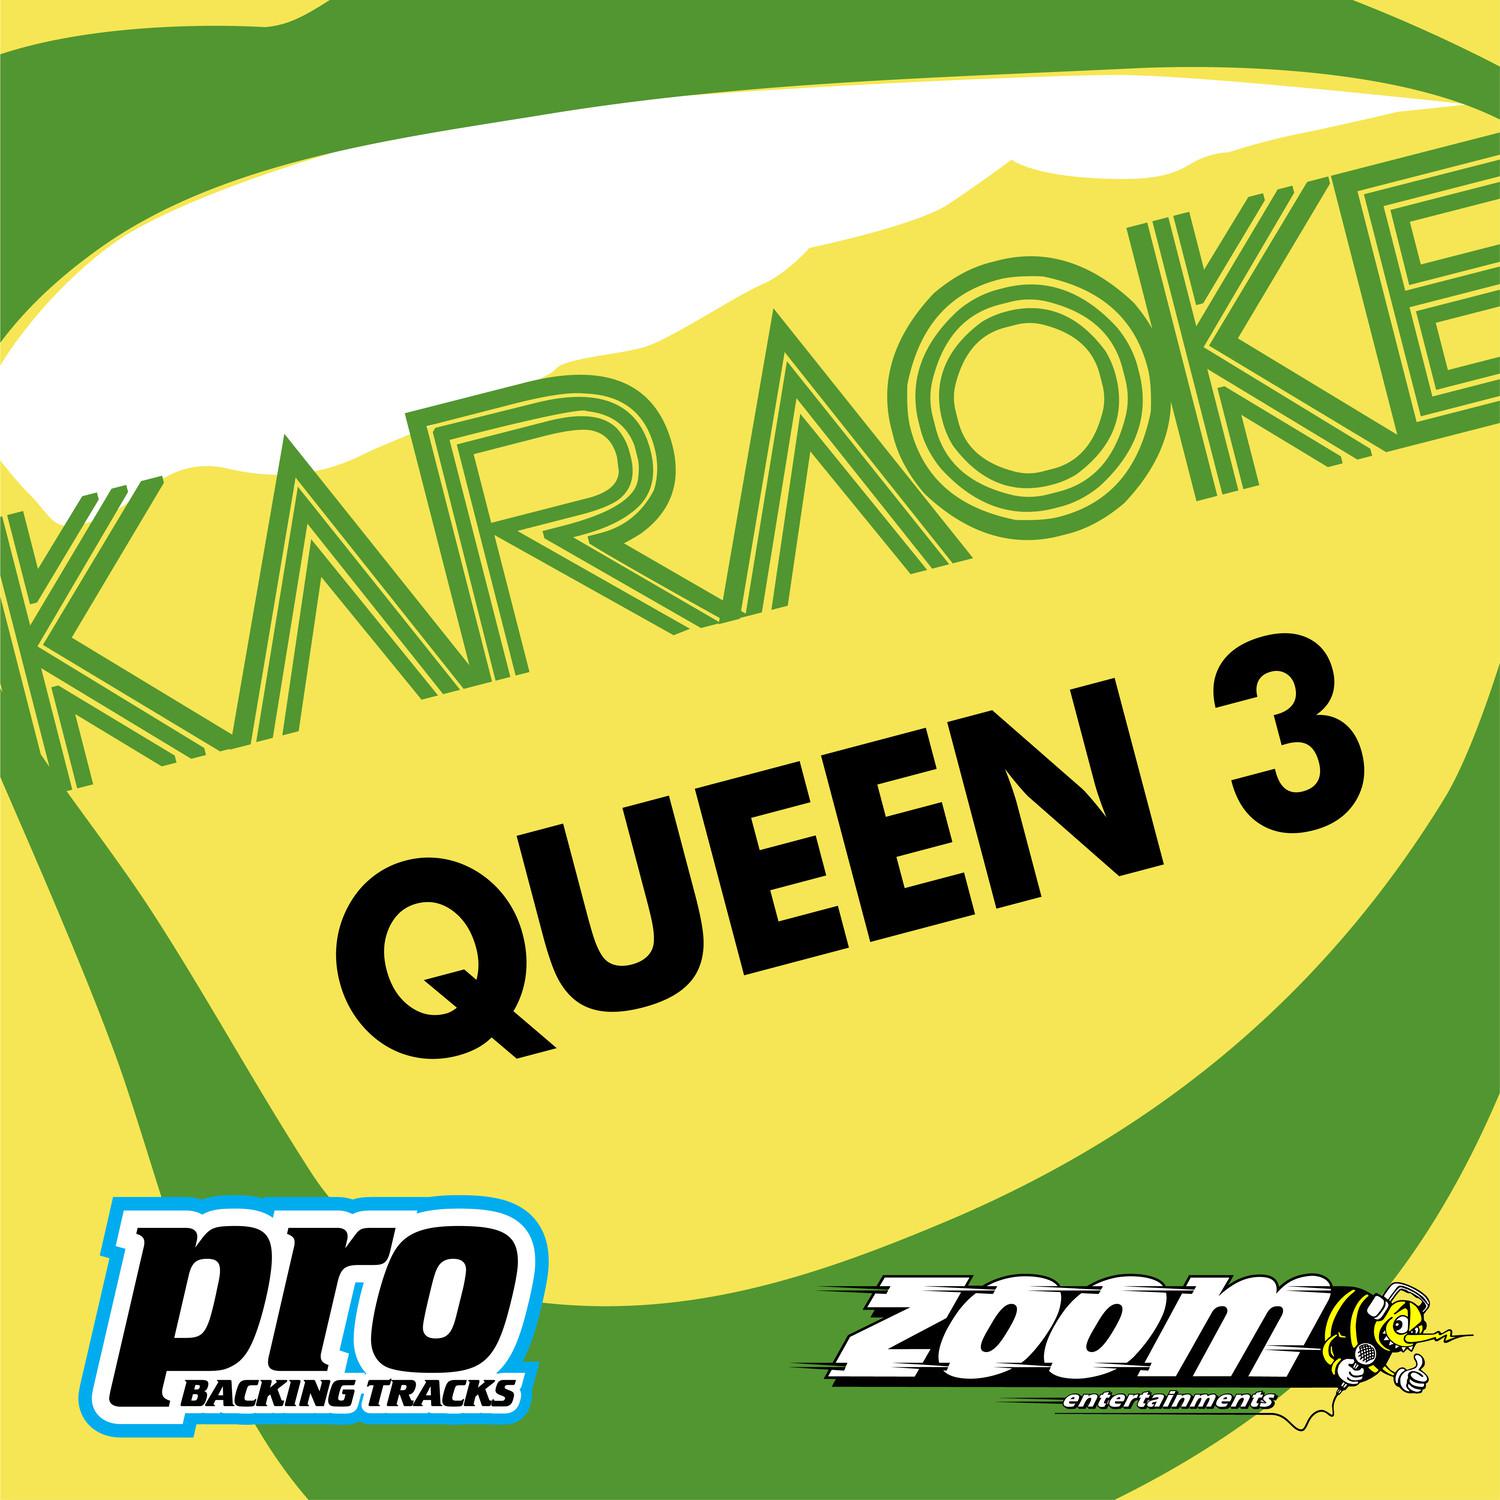 Zoom Karaoke - Queen 3